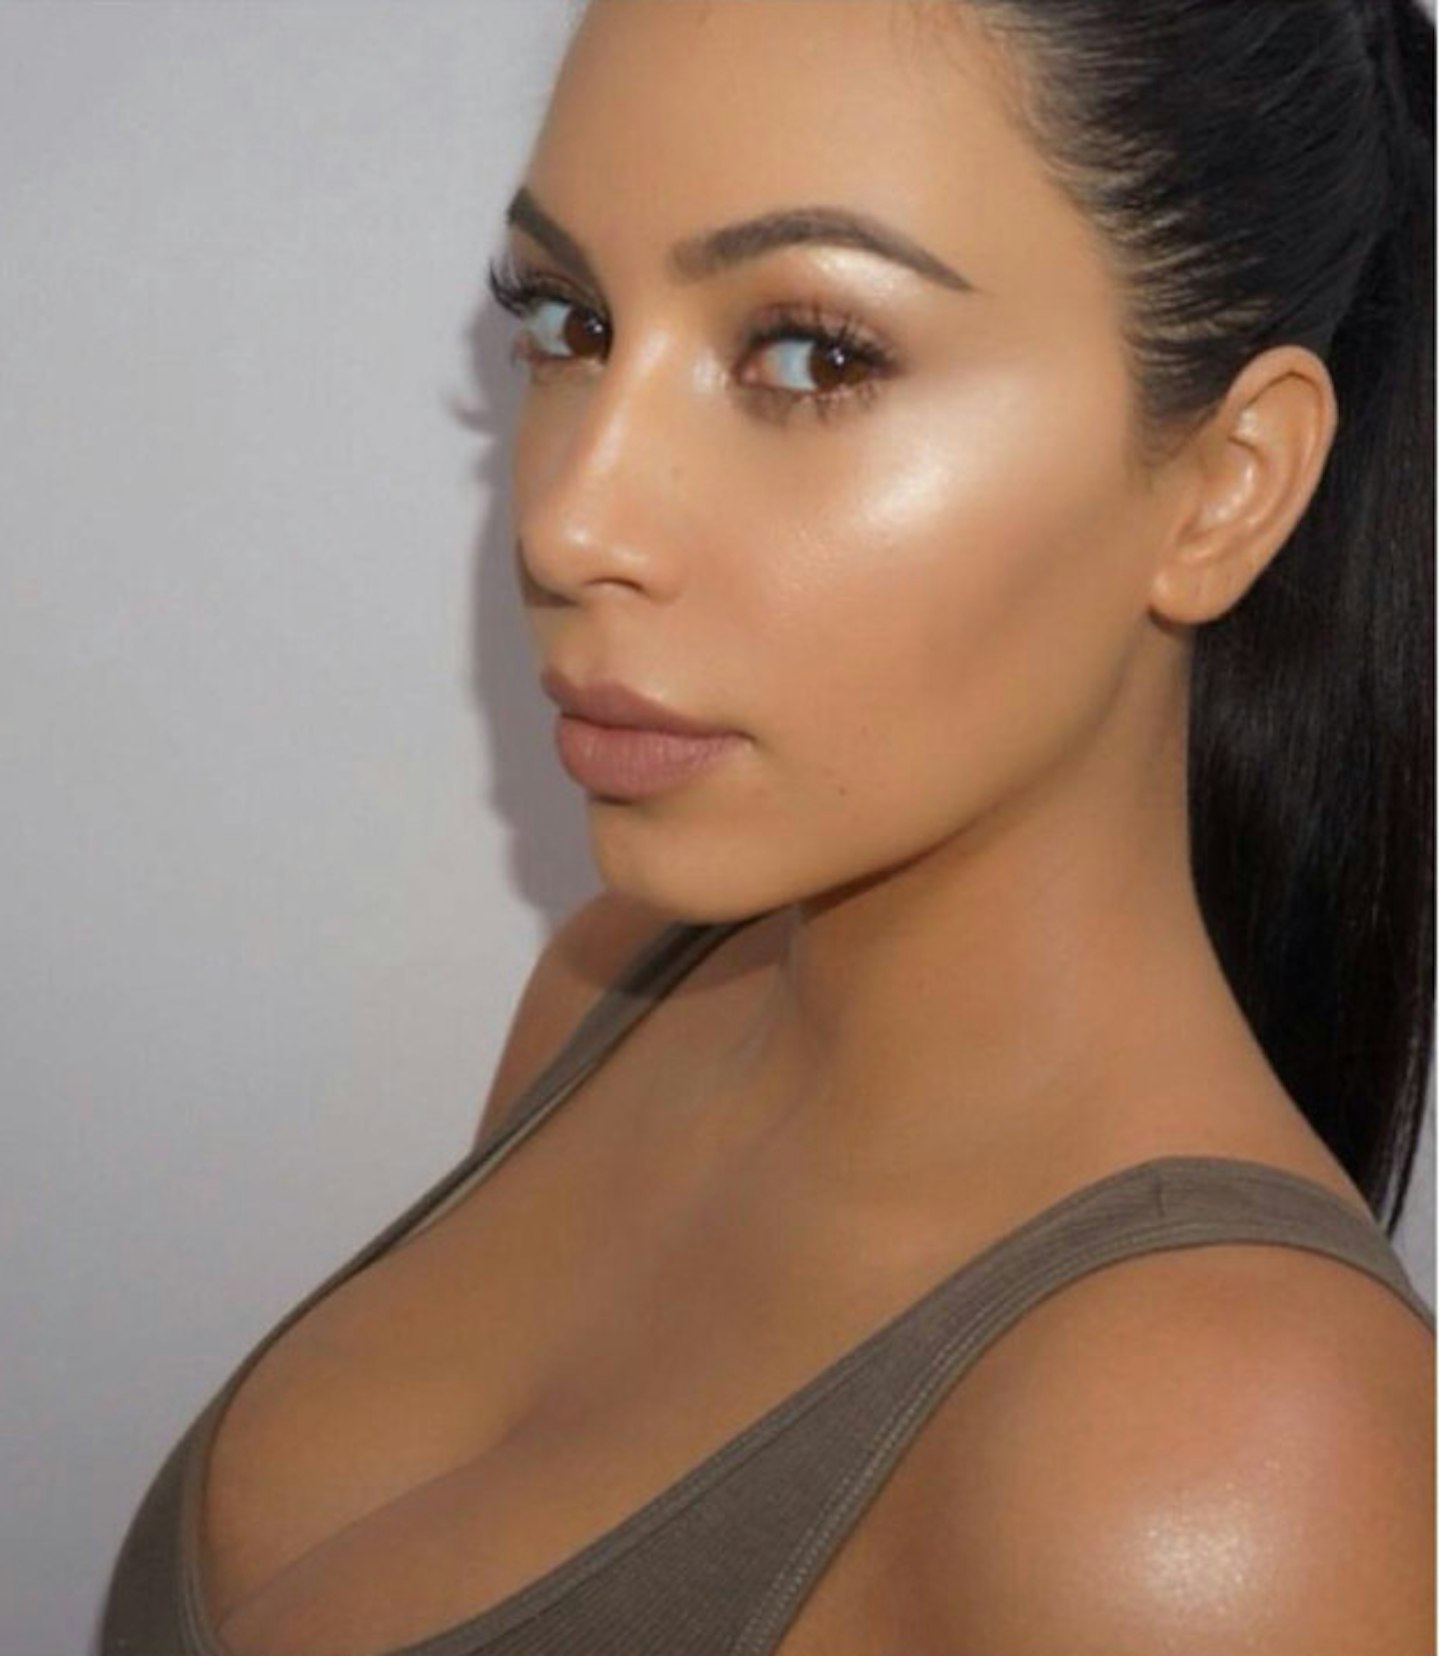 Kim Kardashian instagram